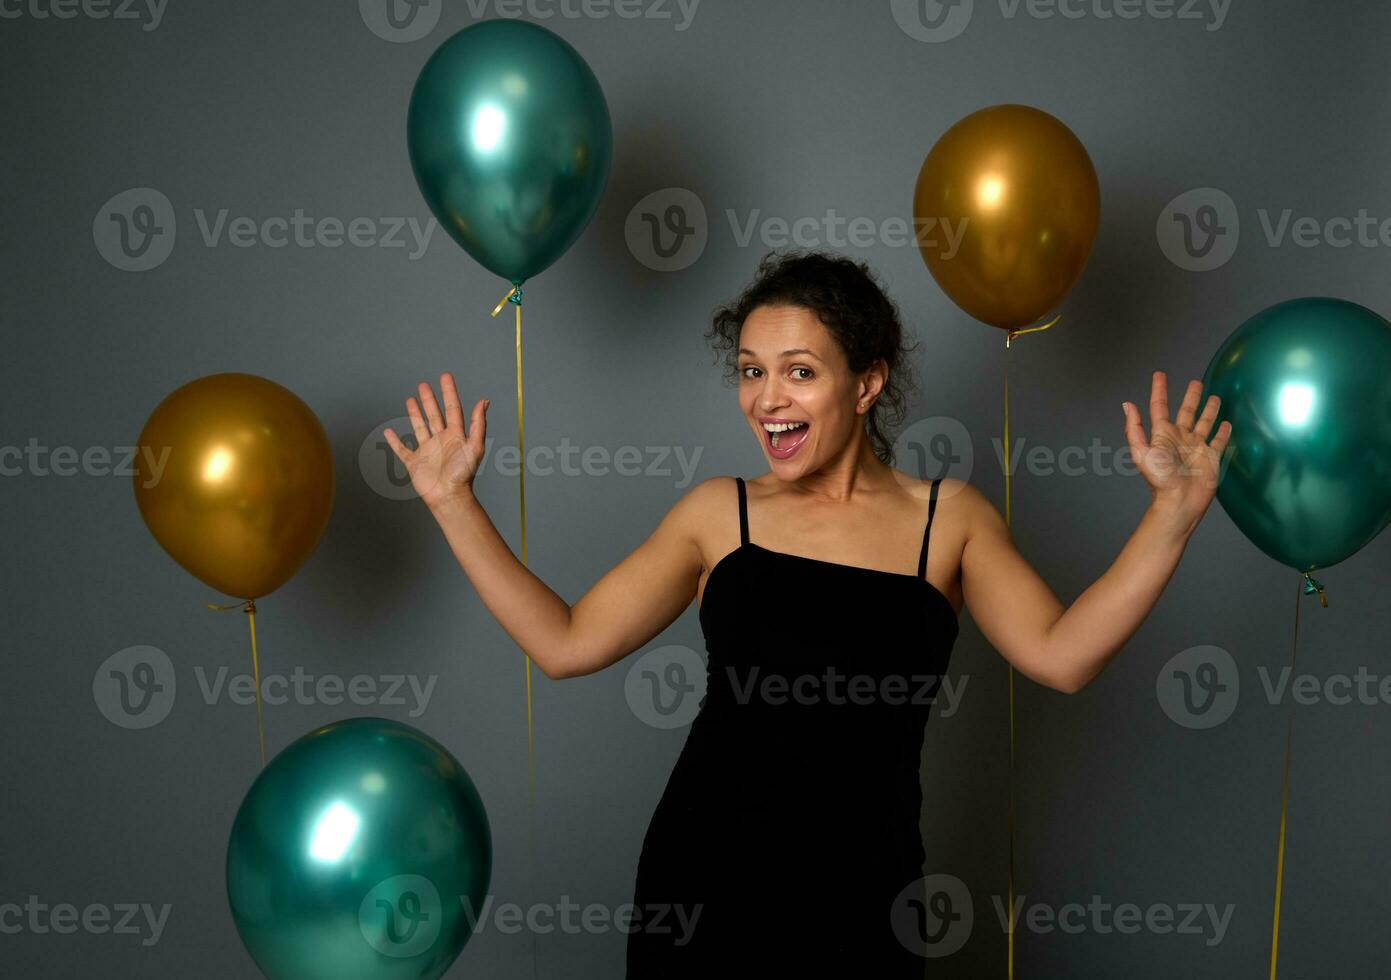 vrolijk jong Latijns vrouw in zwart avond jurk verheugt zich, glimlacht toothy glimlach op zoek Bij camera tegen een feestelijk overladen grijs muur achtergrond met mooi glimmend goud en groen metalen ballonnen foto